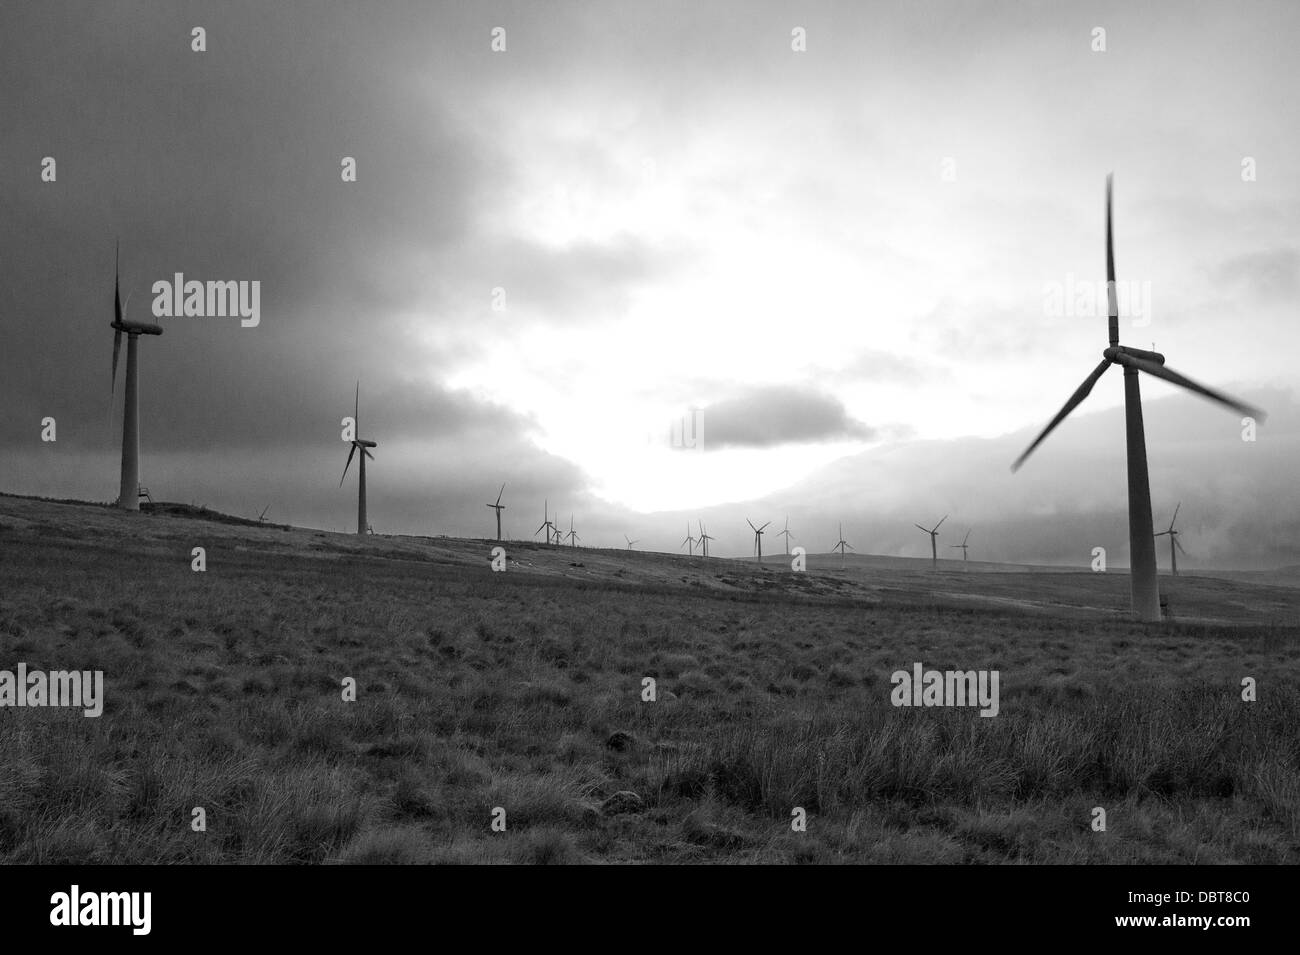 Windkraftanlagen Sie Silhouette gegen einen dunklen frühen Abendhimmel.  Schwarz & weiß. Stockfoto